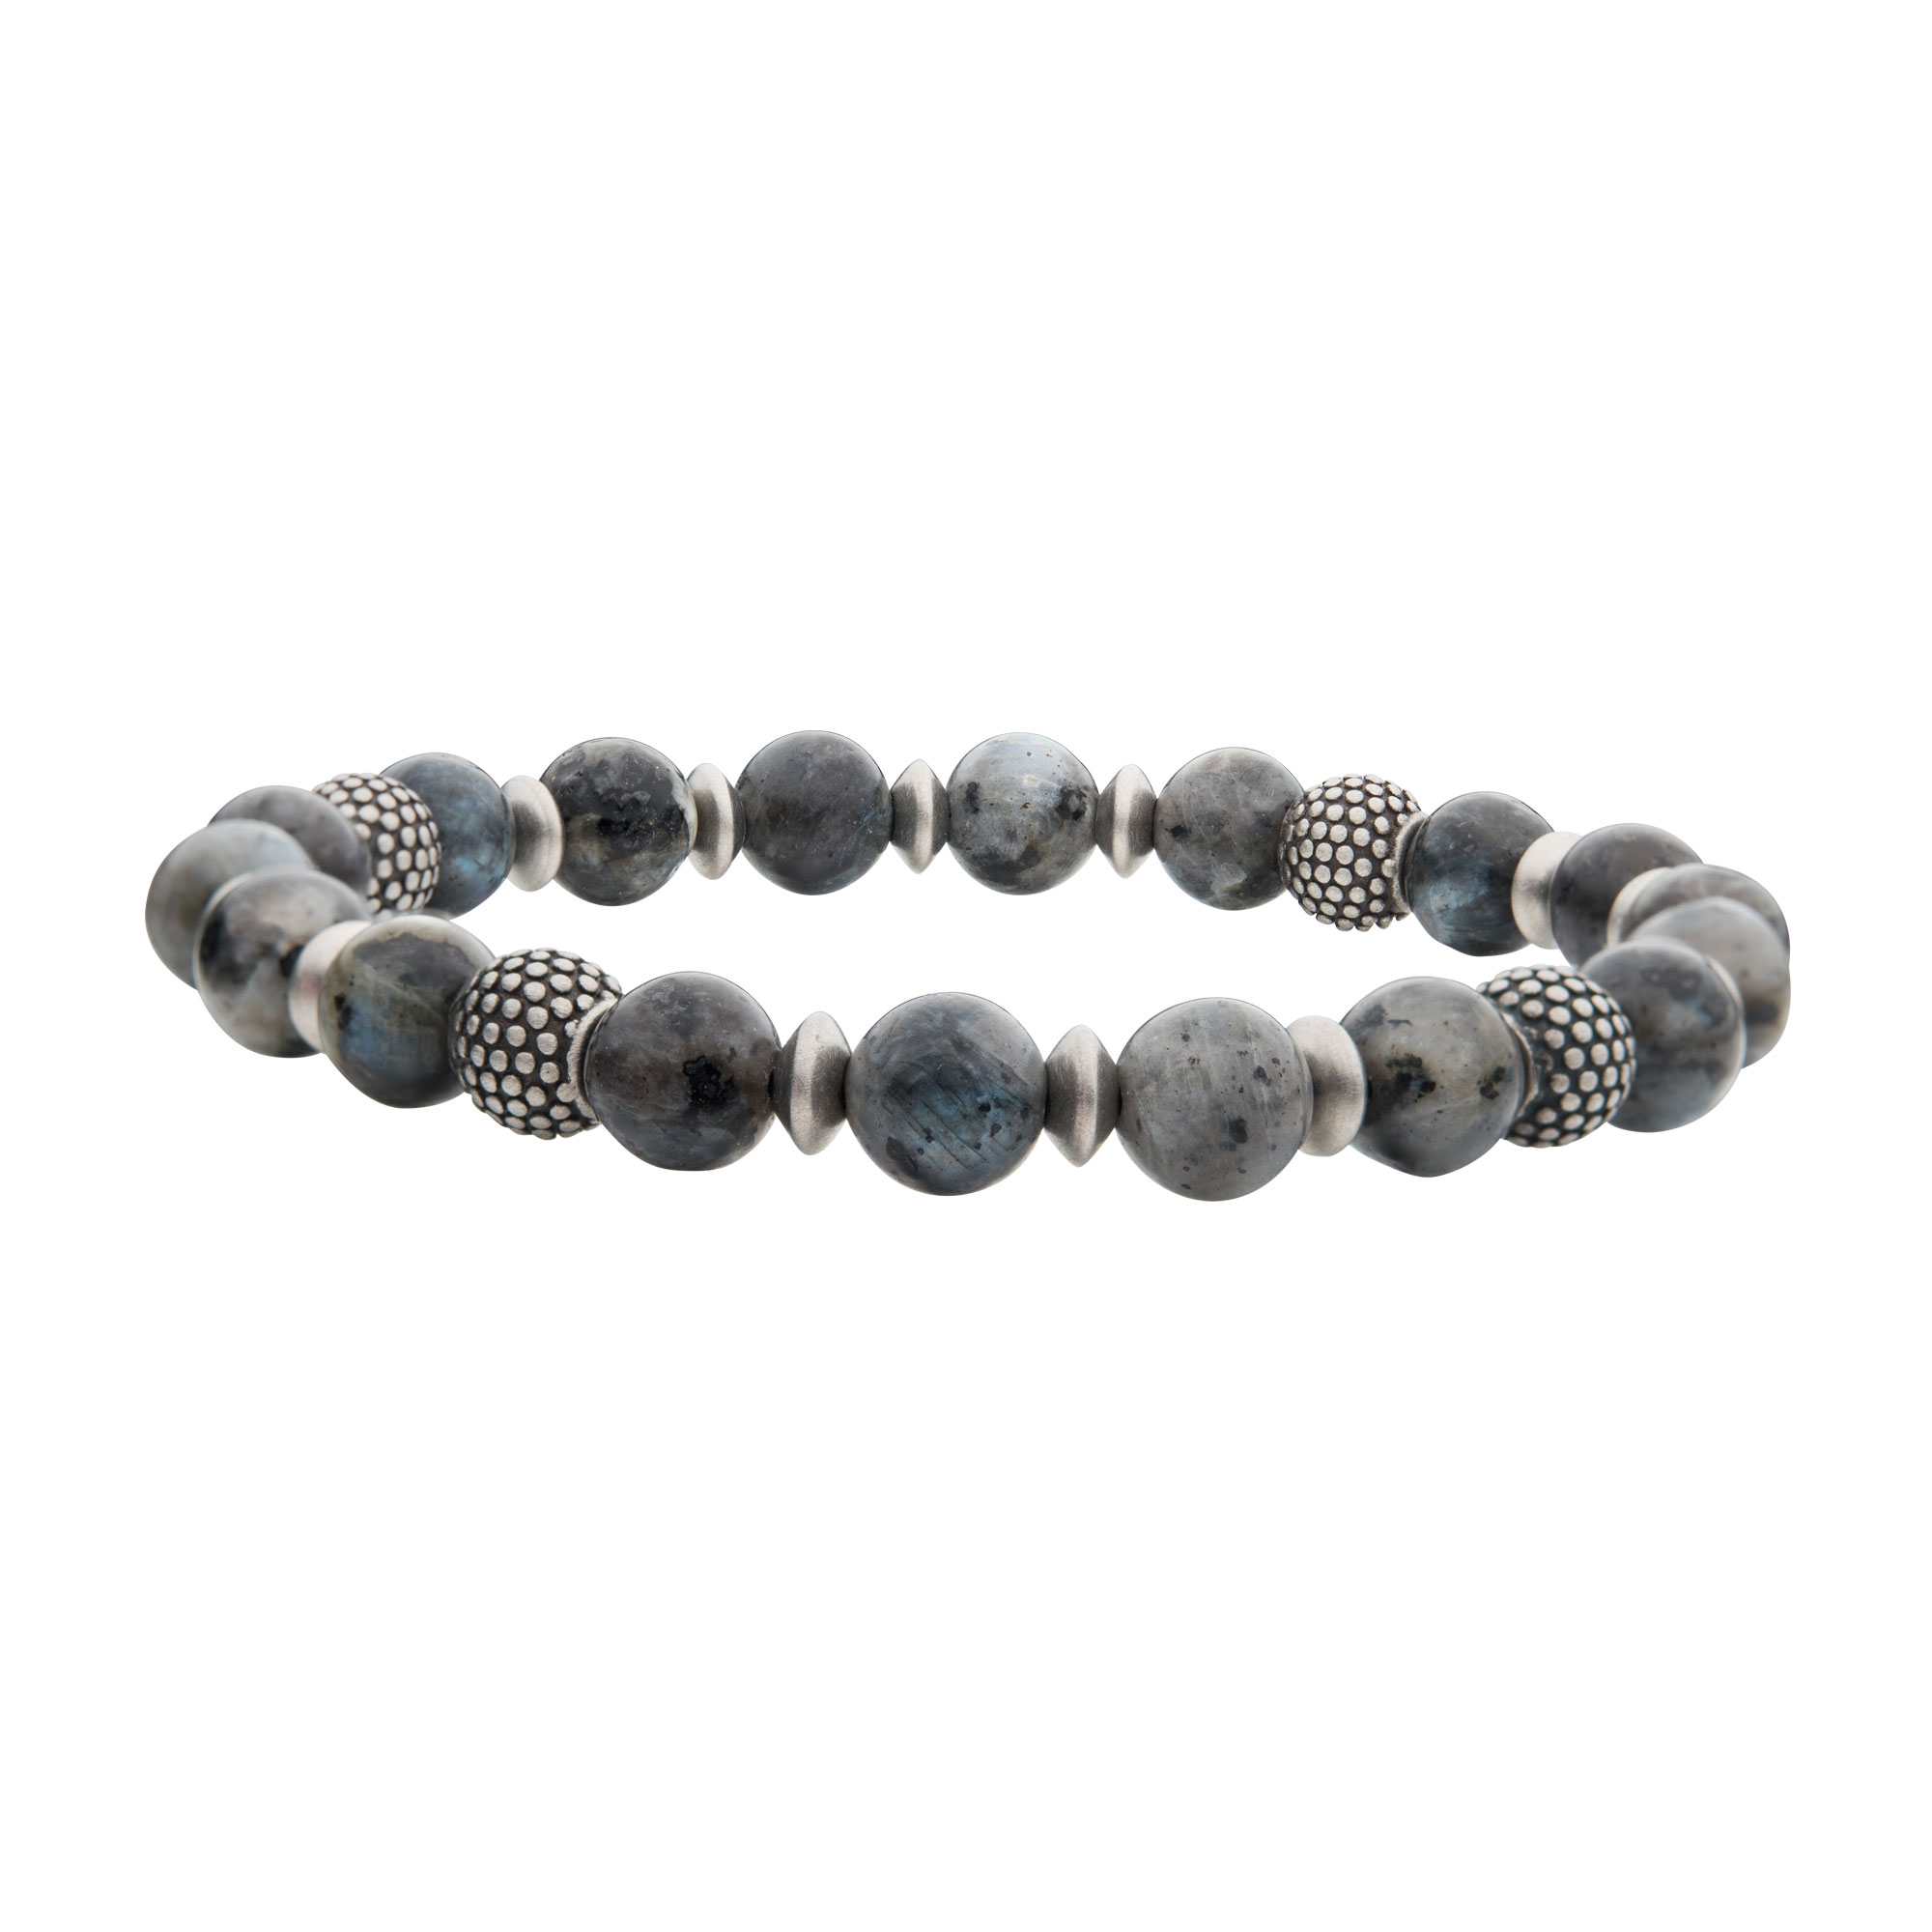 Labradorite Stones with Black Oxidized Beads Bracelet Glatz Jewelry Aliquippa, PA